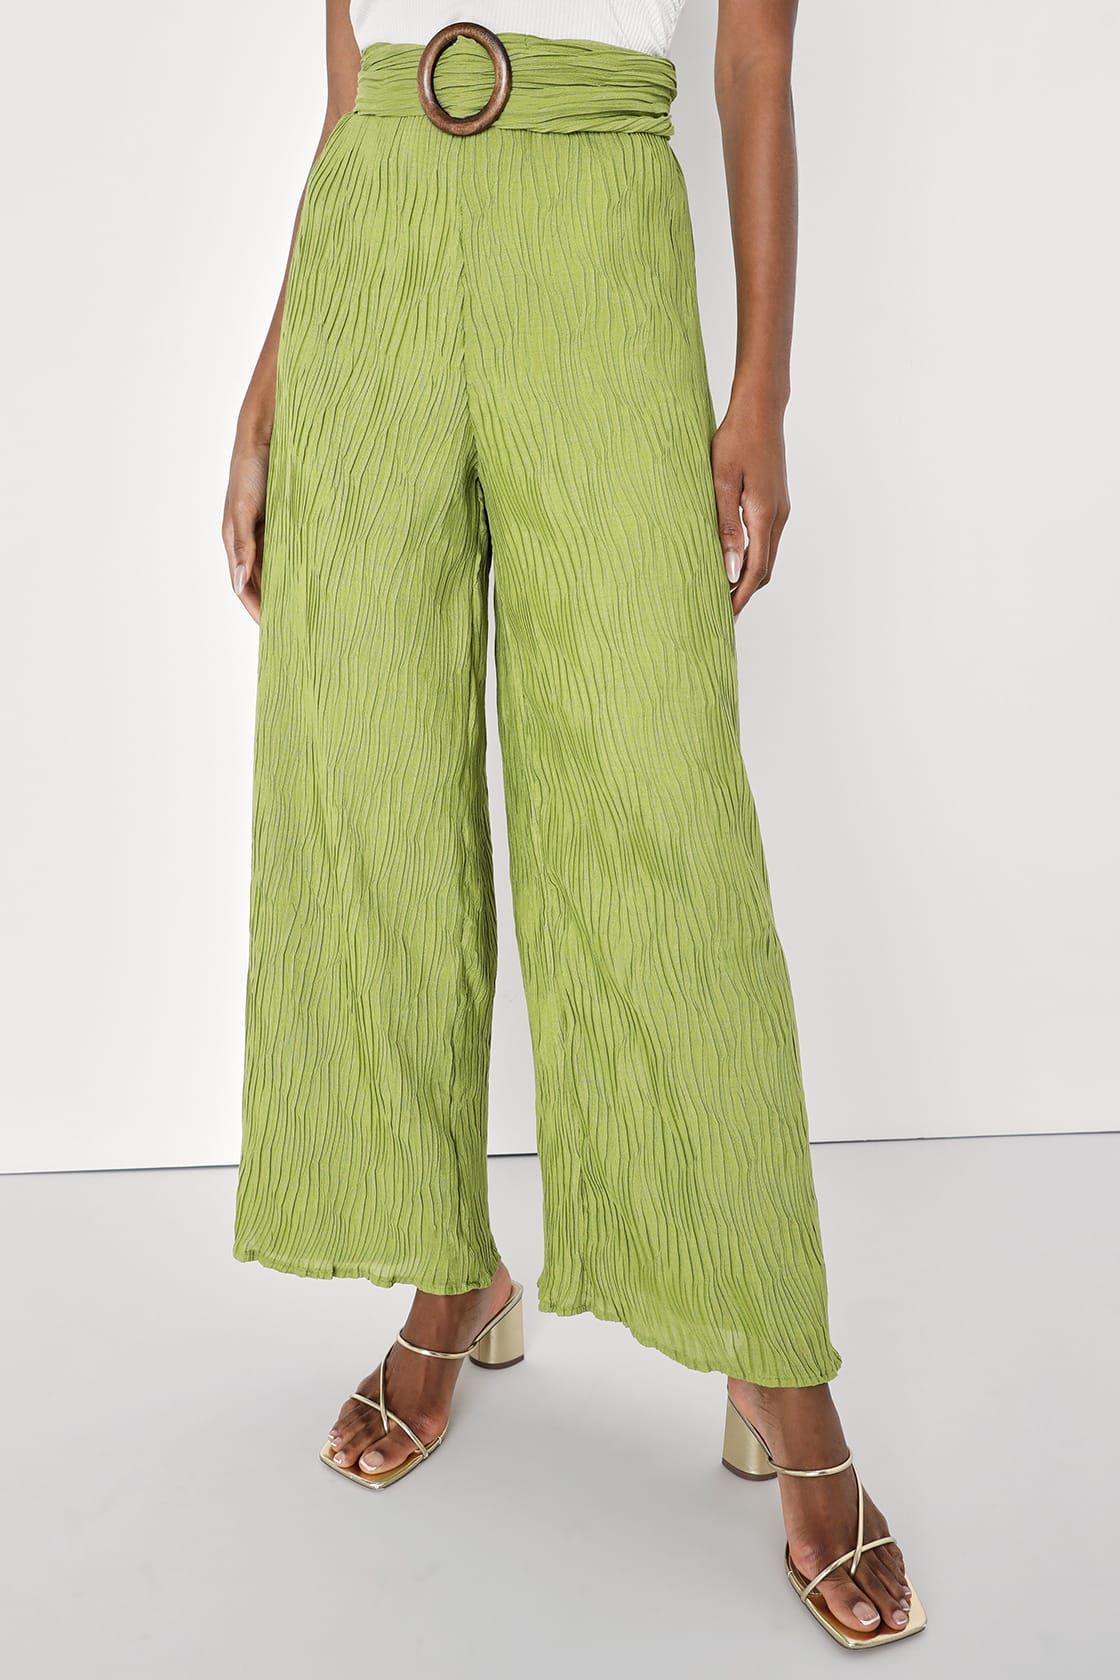 Getaway Essentials Lime Green Plisse Belted Wide Leg Pants | Lulus (US)